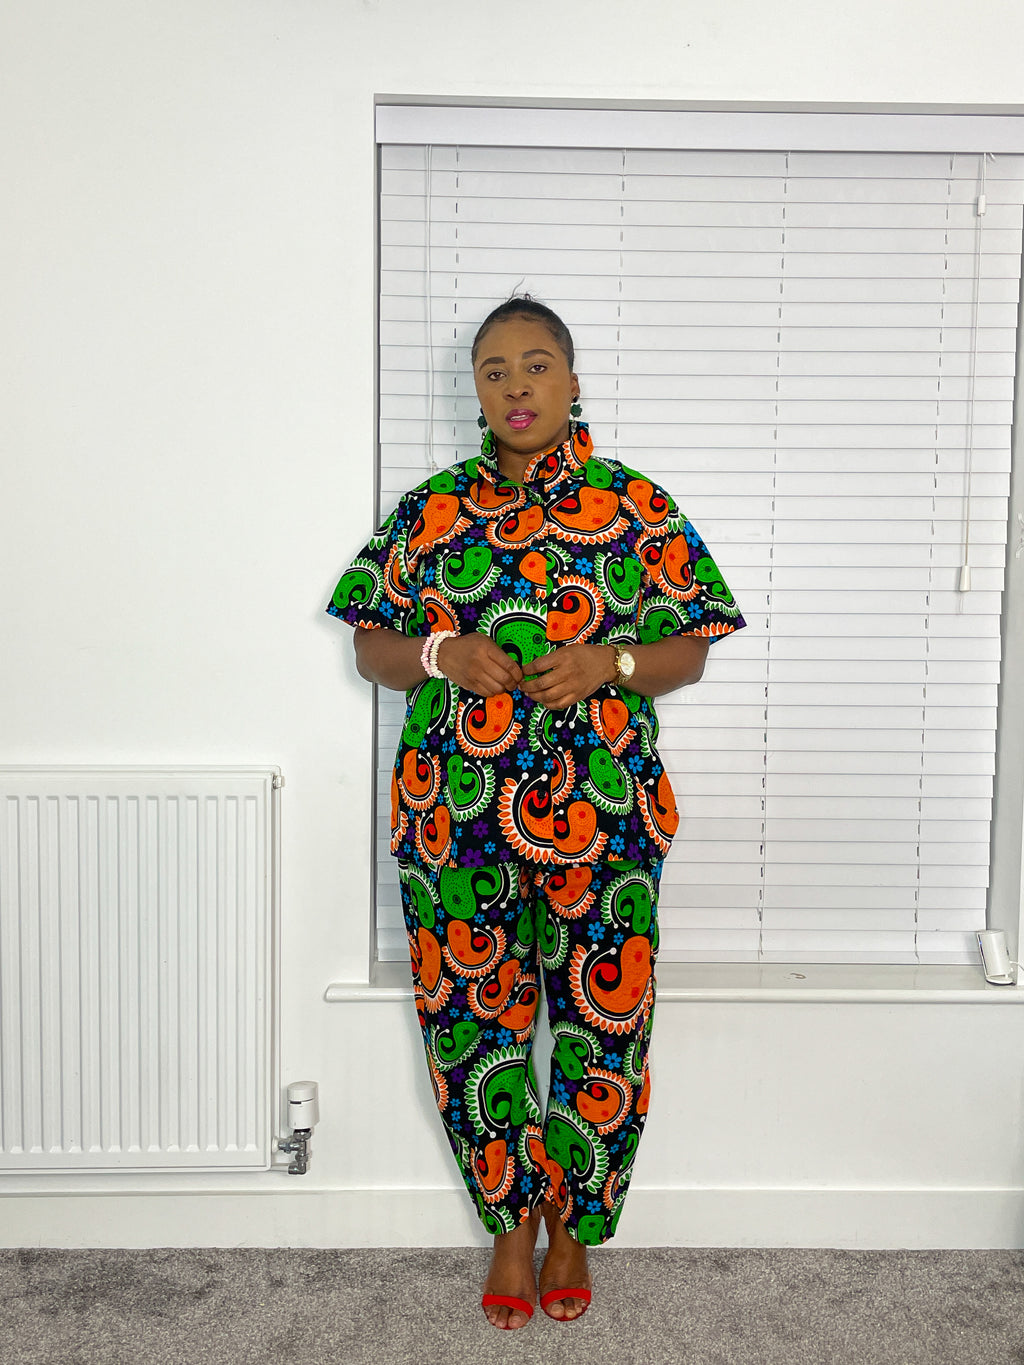 Barbara Ankara Short-sleeves Shirt | Green and Orange Multicolored African Print